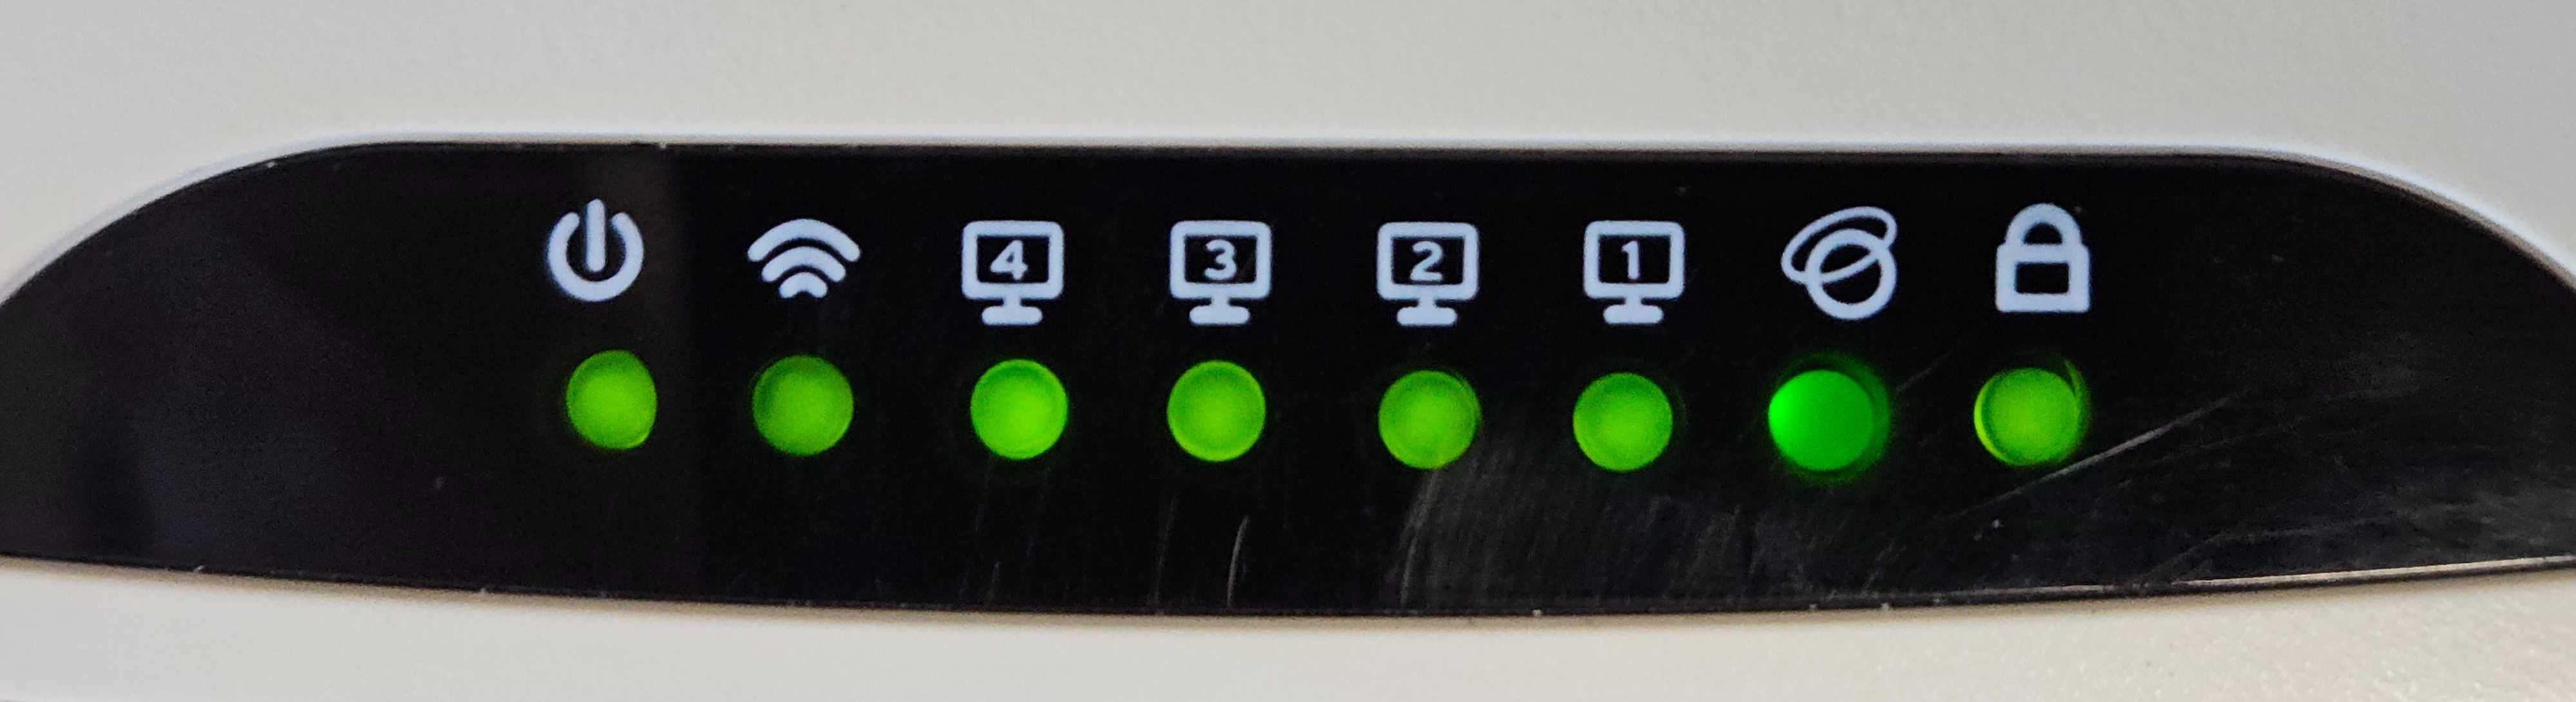 Router bezprzewodowy TP-LINK, standard N, Model: TL-WR841N